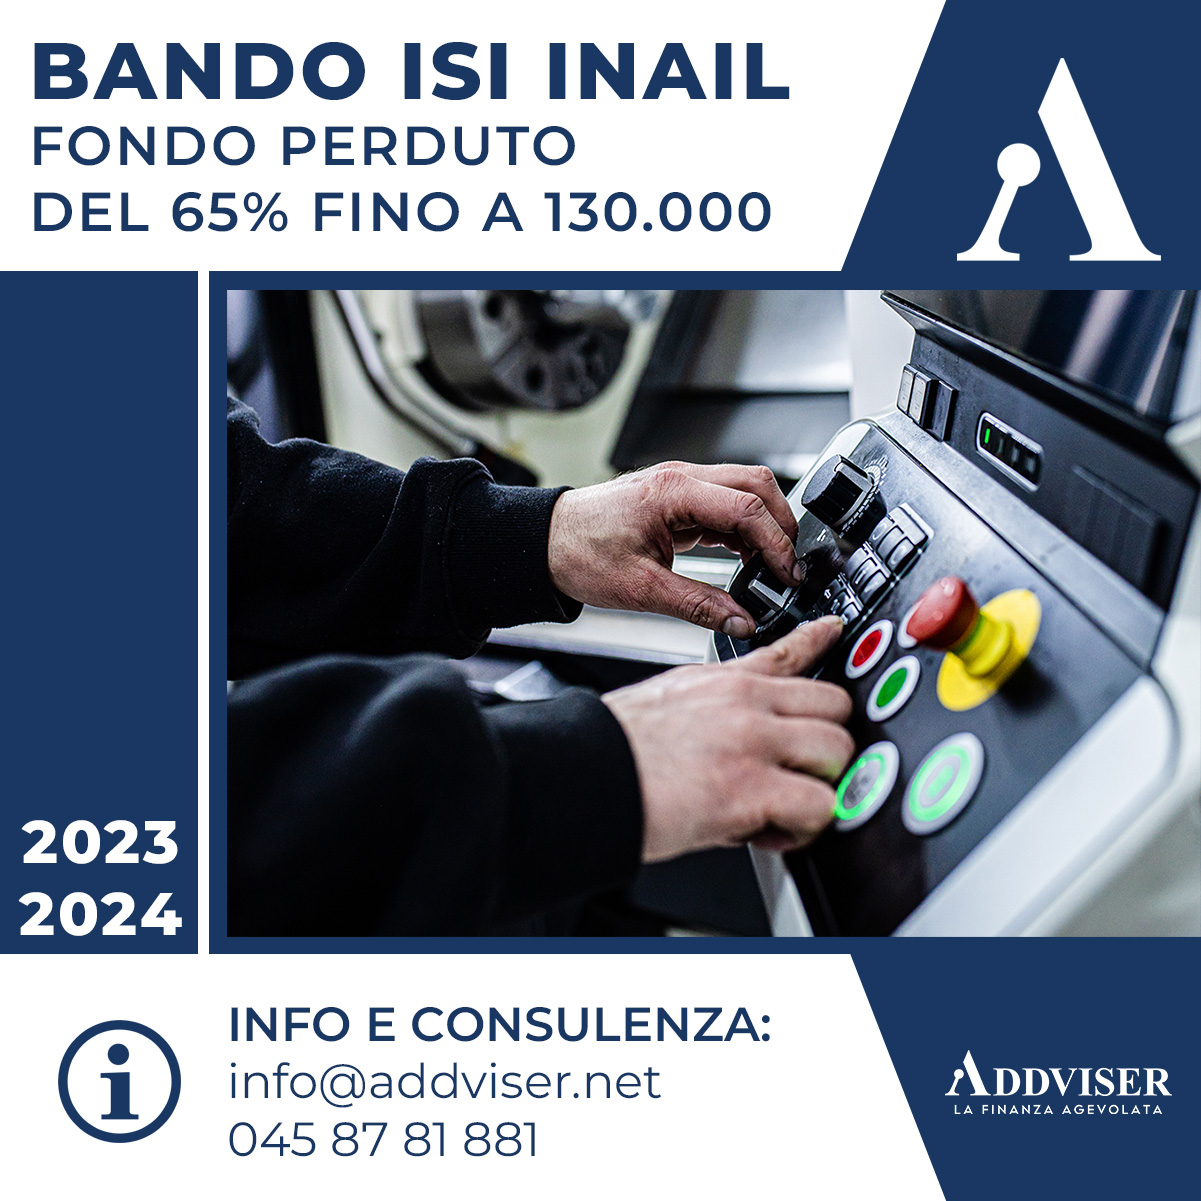 Bando ISI INAIL 2023 - 2024